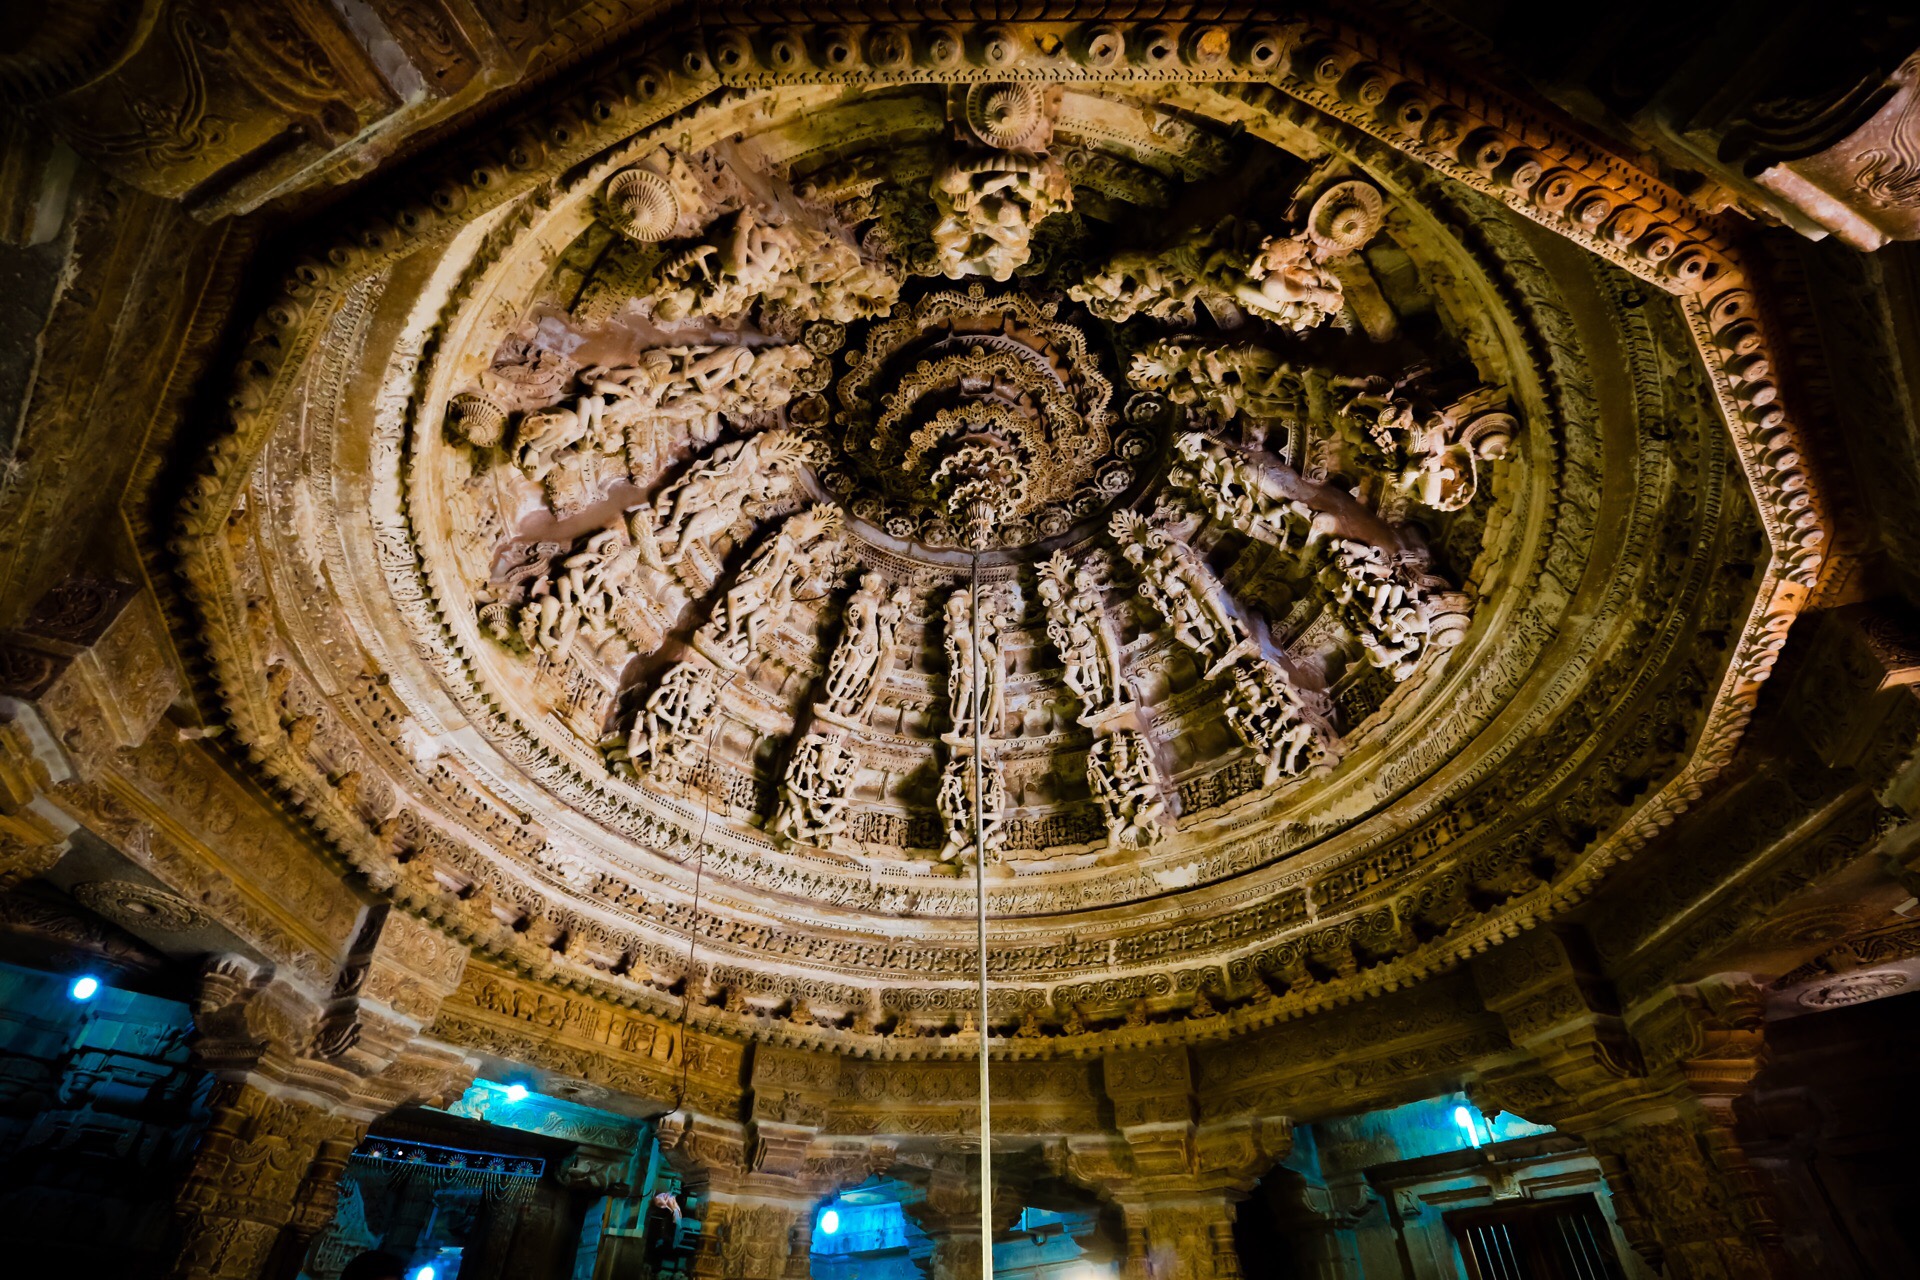 在拉贾斯坦邦贾沙梅尔古堡里面最值得欣赏的景点之一就是耆那教寺庙了，这是一座如迷宫一般的黄沙石耆那教神